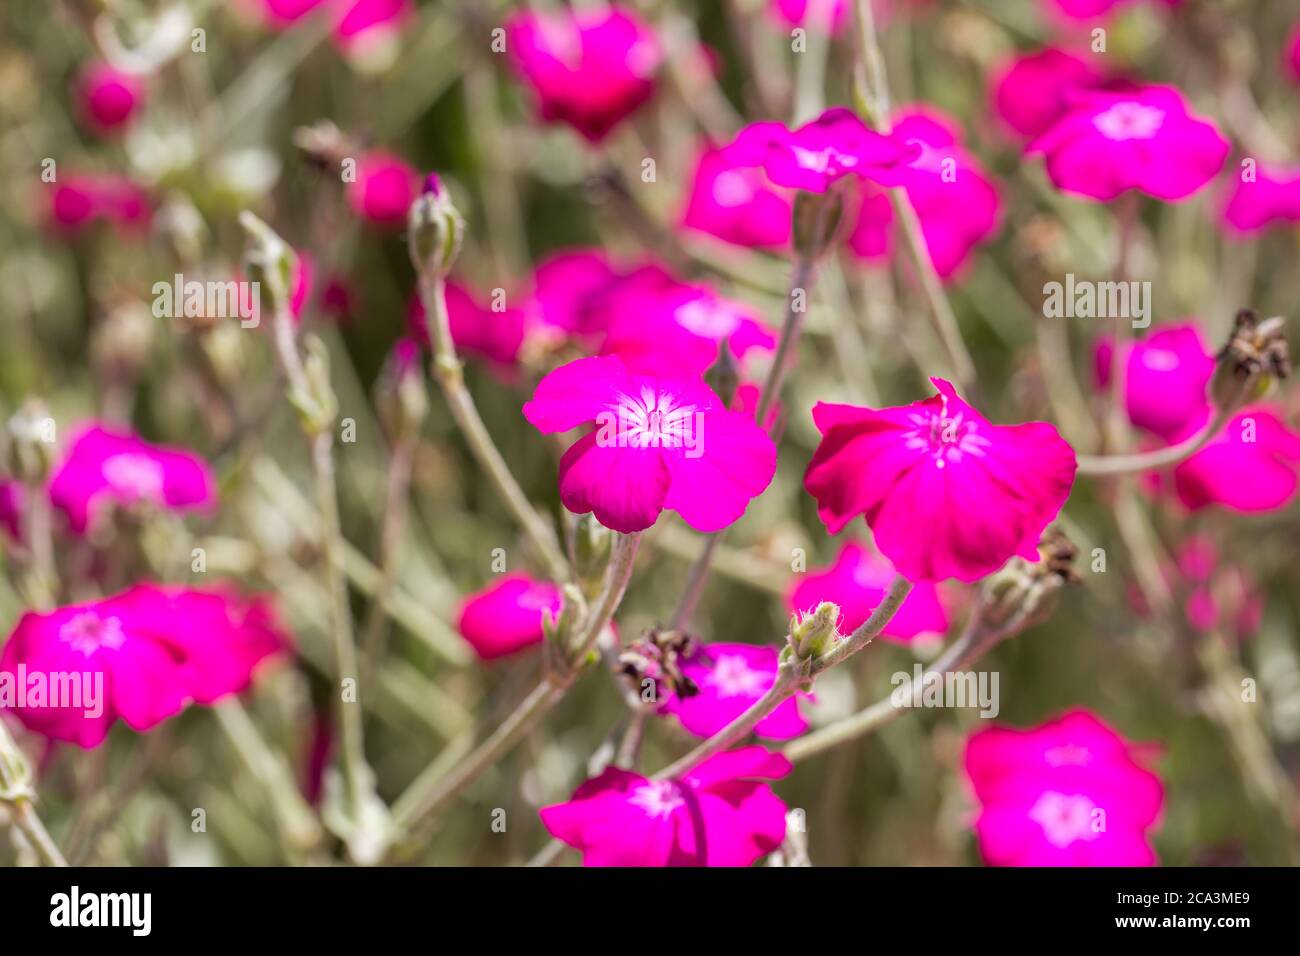 Gros plan de la fleur de Lychnis coronaria. Plante à fleurs de la famille des Caryophyllacées. Arrière-plan flou. Banque D'Images